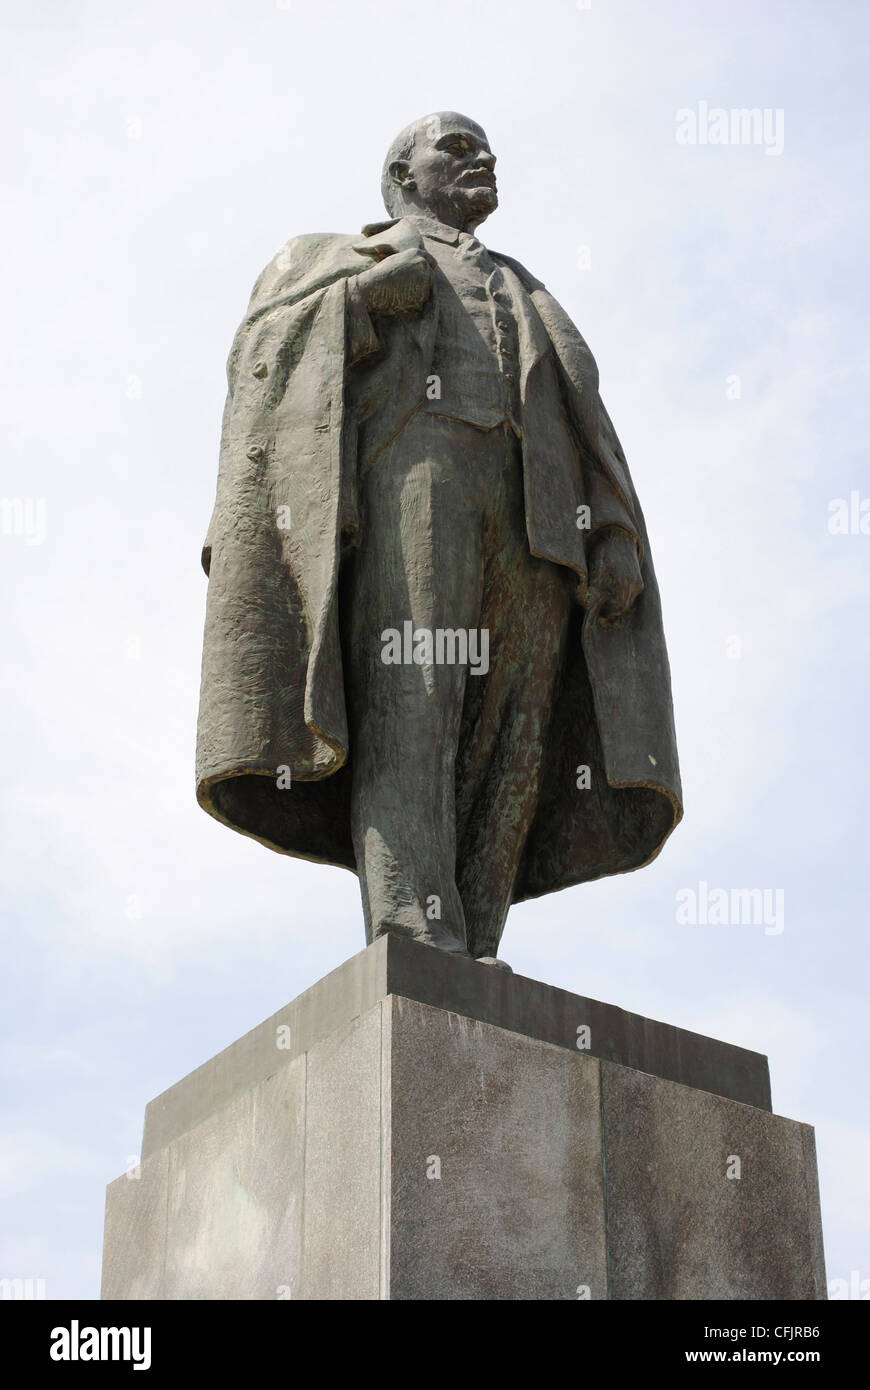 Vladimir Iljitsch Lenin (1870-1924). Russische marxistische revolutionäre und kommunistischer Politiker. Das Denkmal. Kertsch. Ukraine. Stockfoto